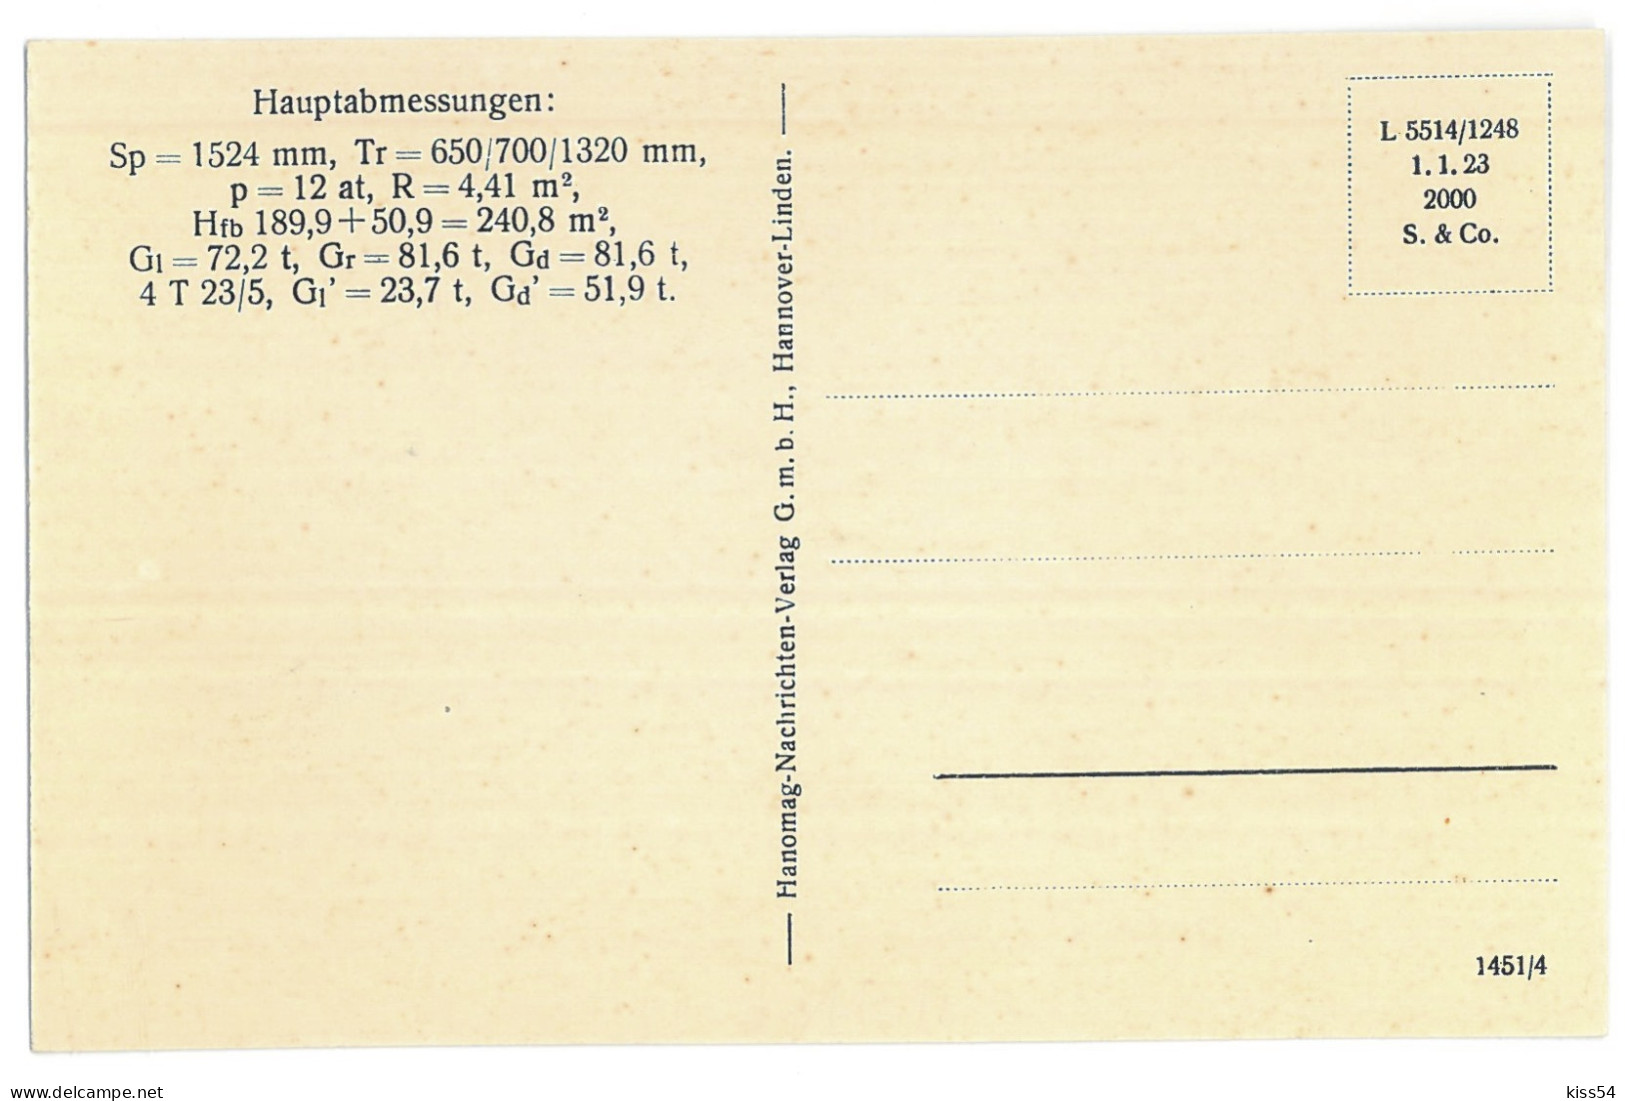 RUS 60 - 13676 LOCOMOTIVE, Russia - Old Postcard - Unused - Russland